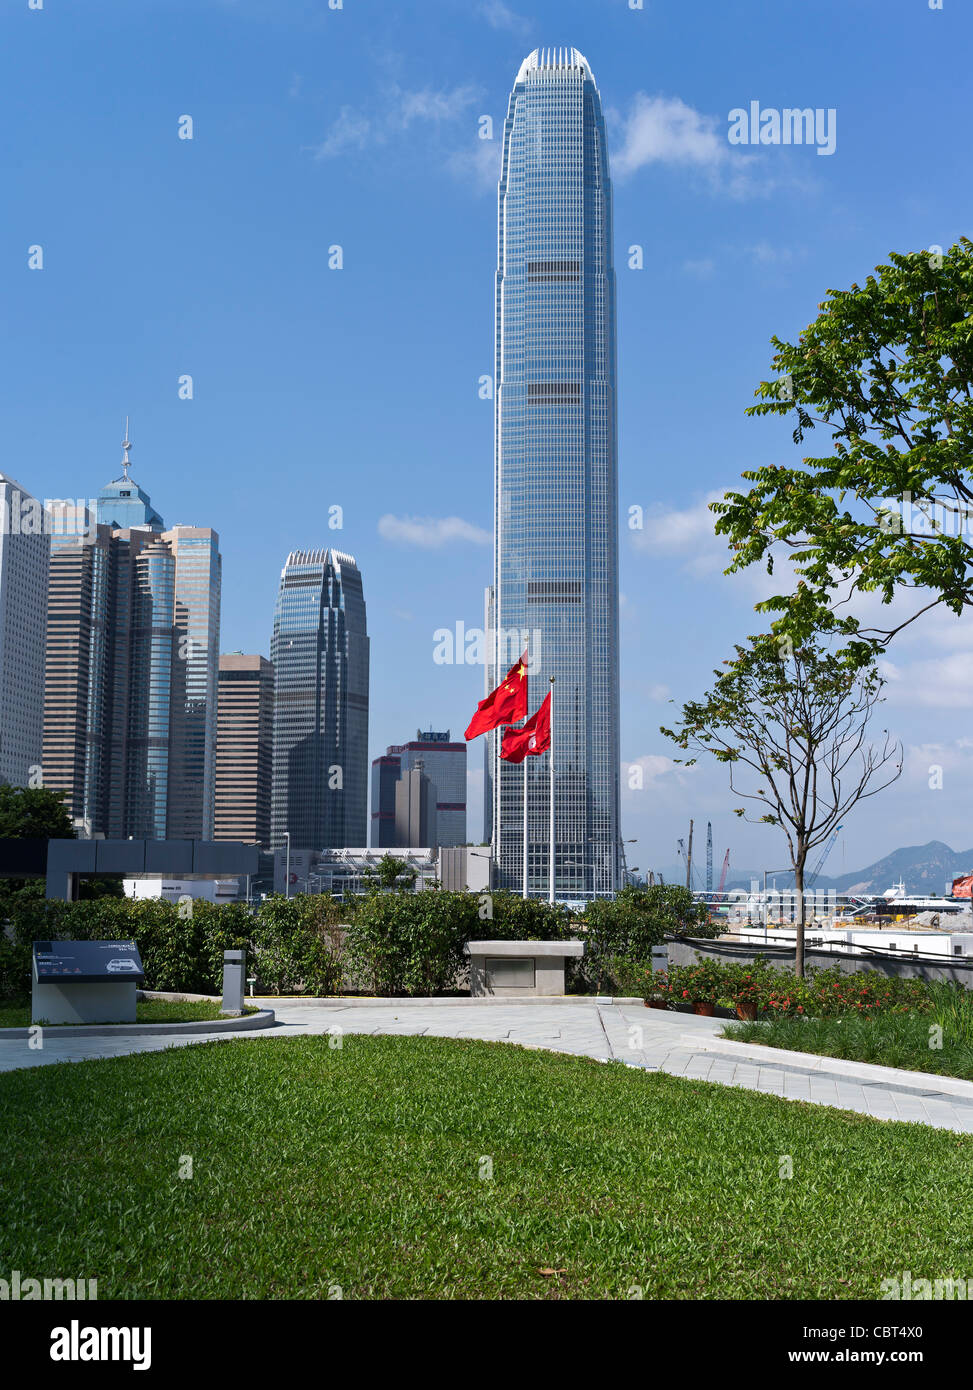 dh ADMIRALTY HONG KONG Tamar Park IFC 2 torre bandiera cinese e Hong Kong bandiere LegCo giardino cina grattacielo città giorno centrale Foto Stock